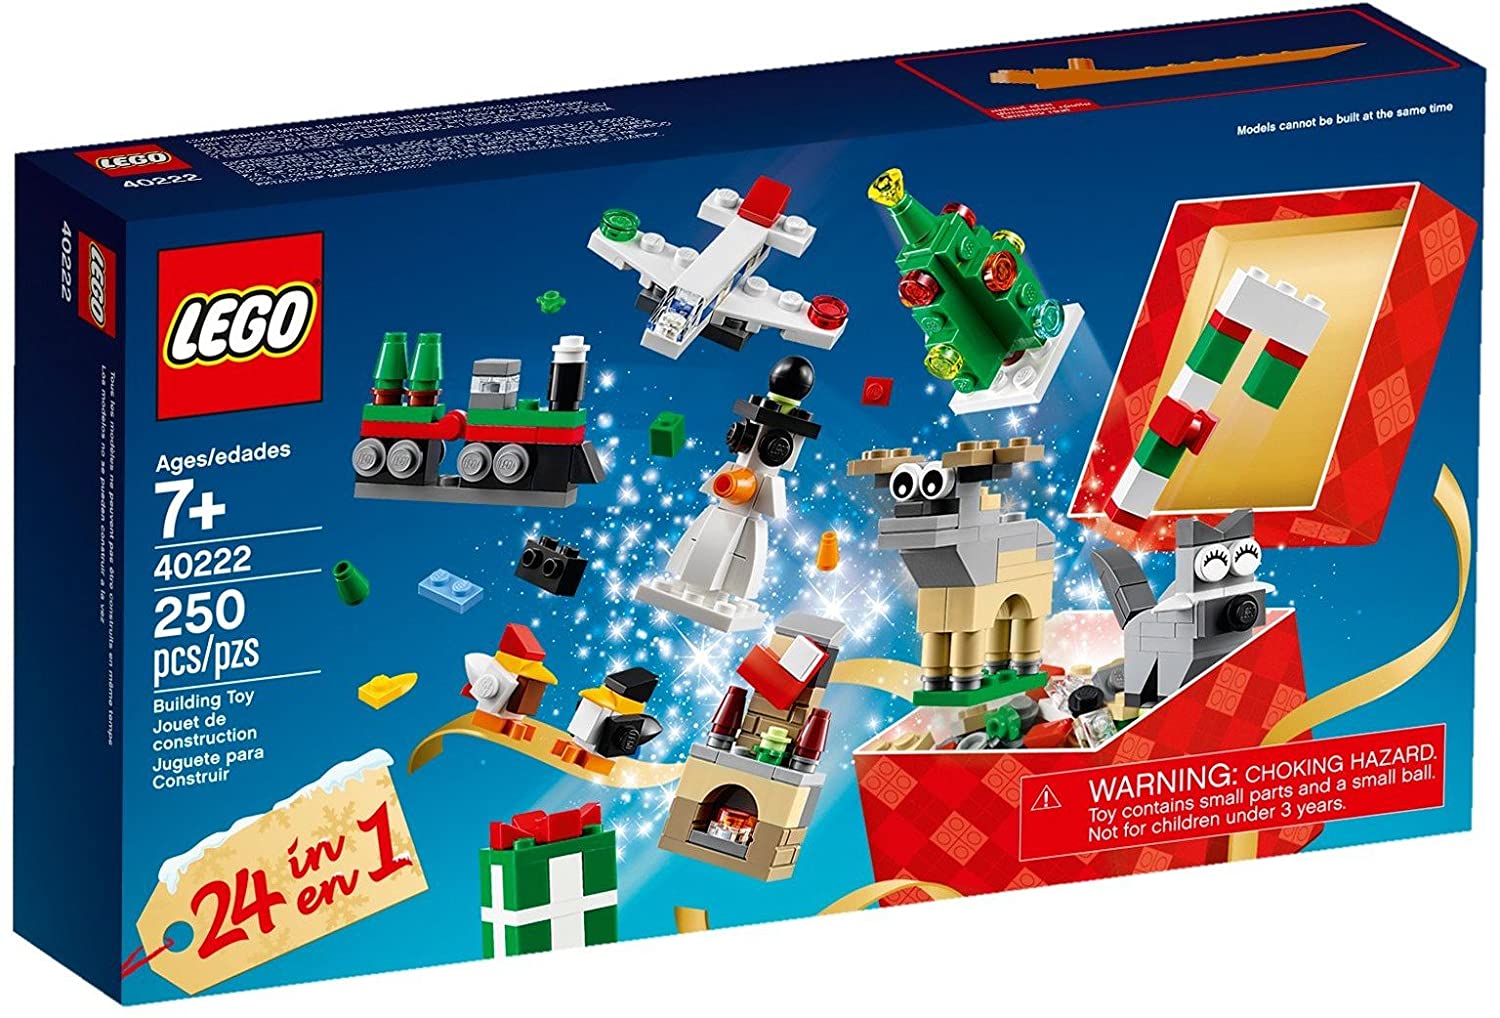 Kép a LEGO 40222 Adventskalender Bauspaß